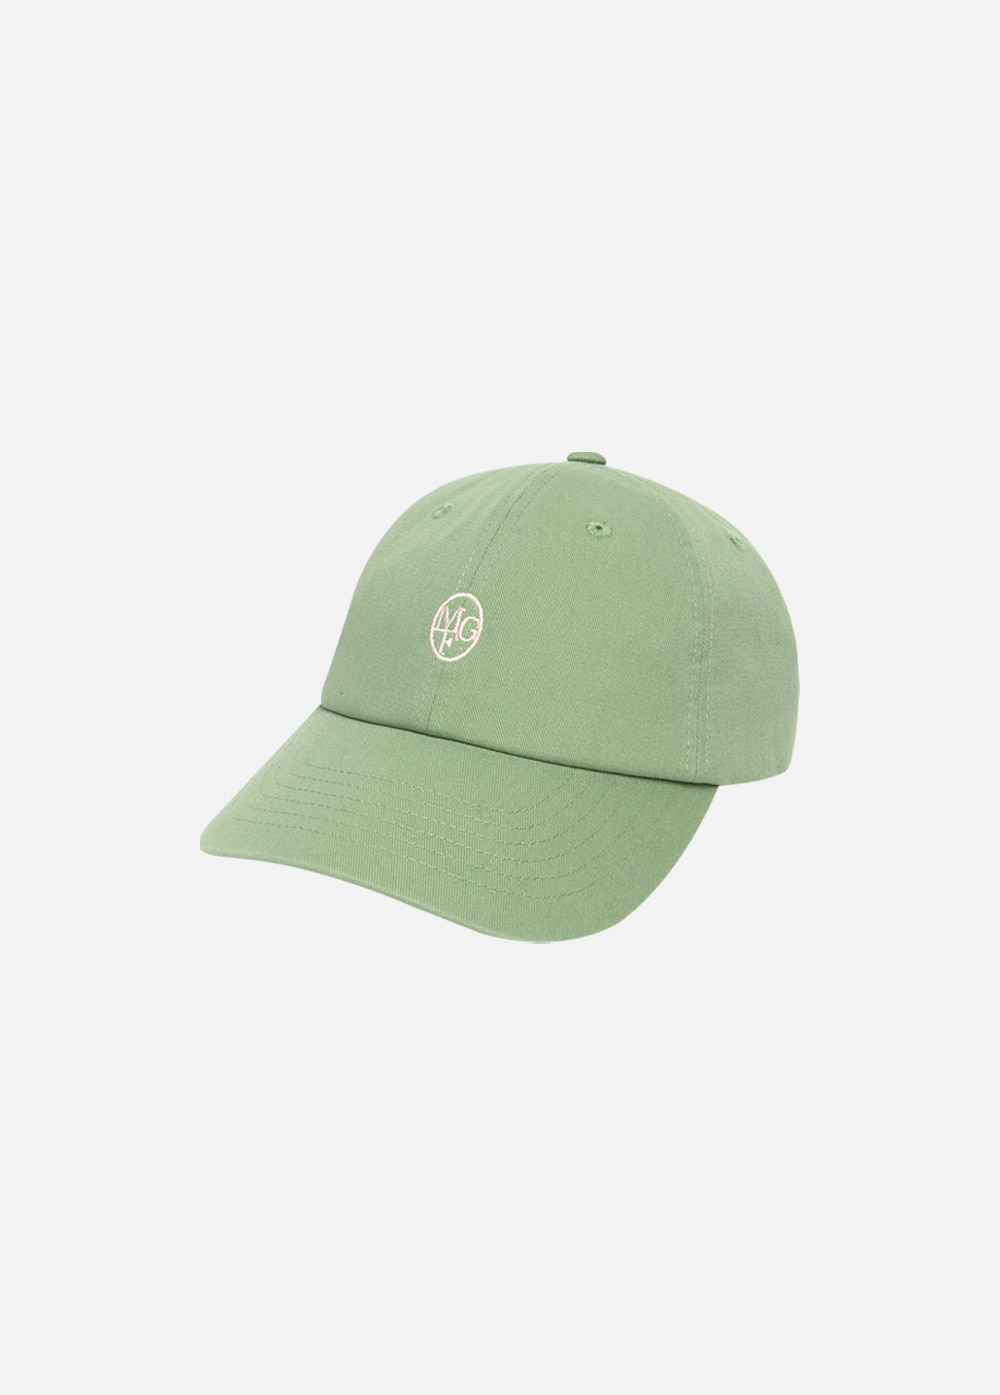 CIRCLE LOGO EMBROIDERY CAP green